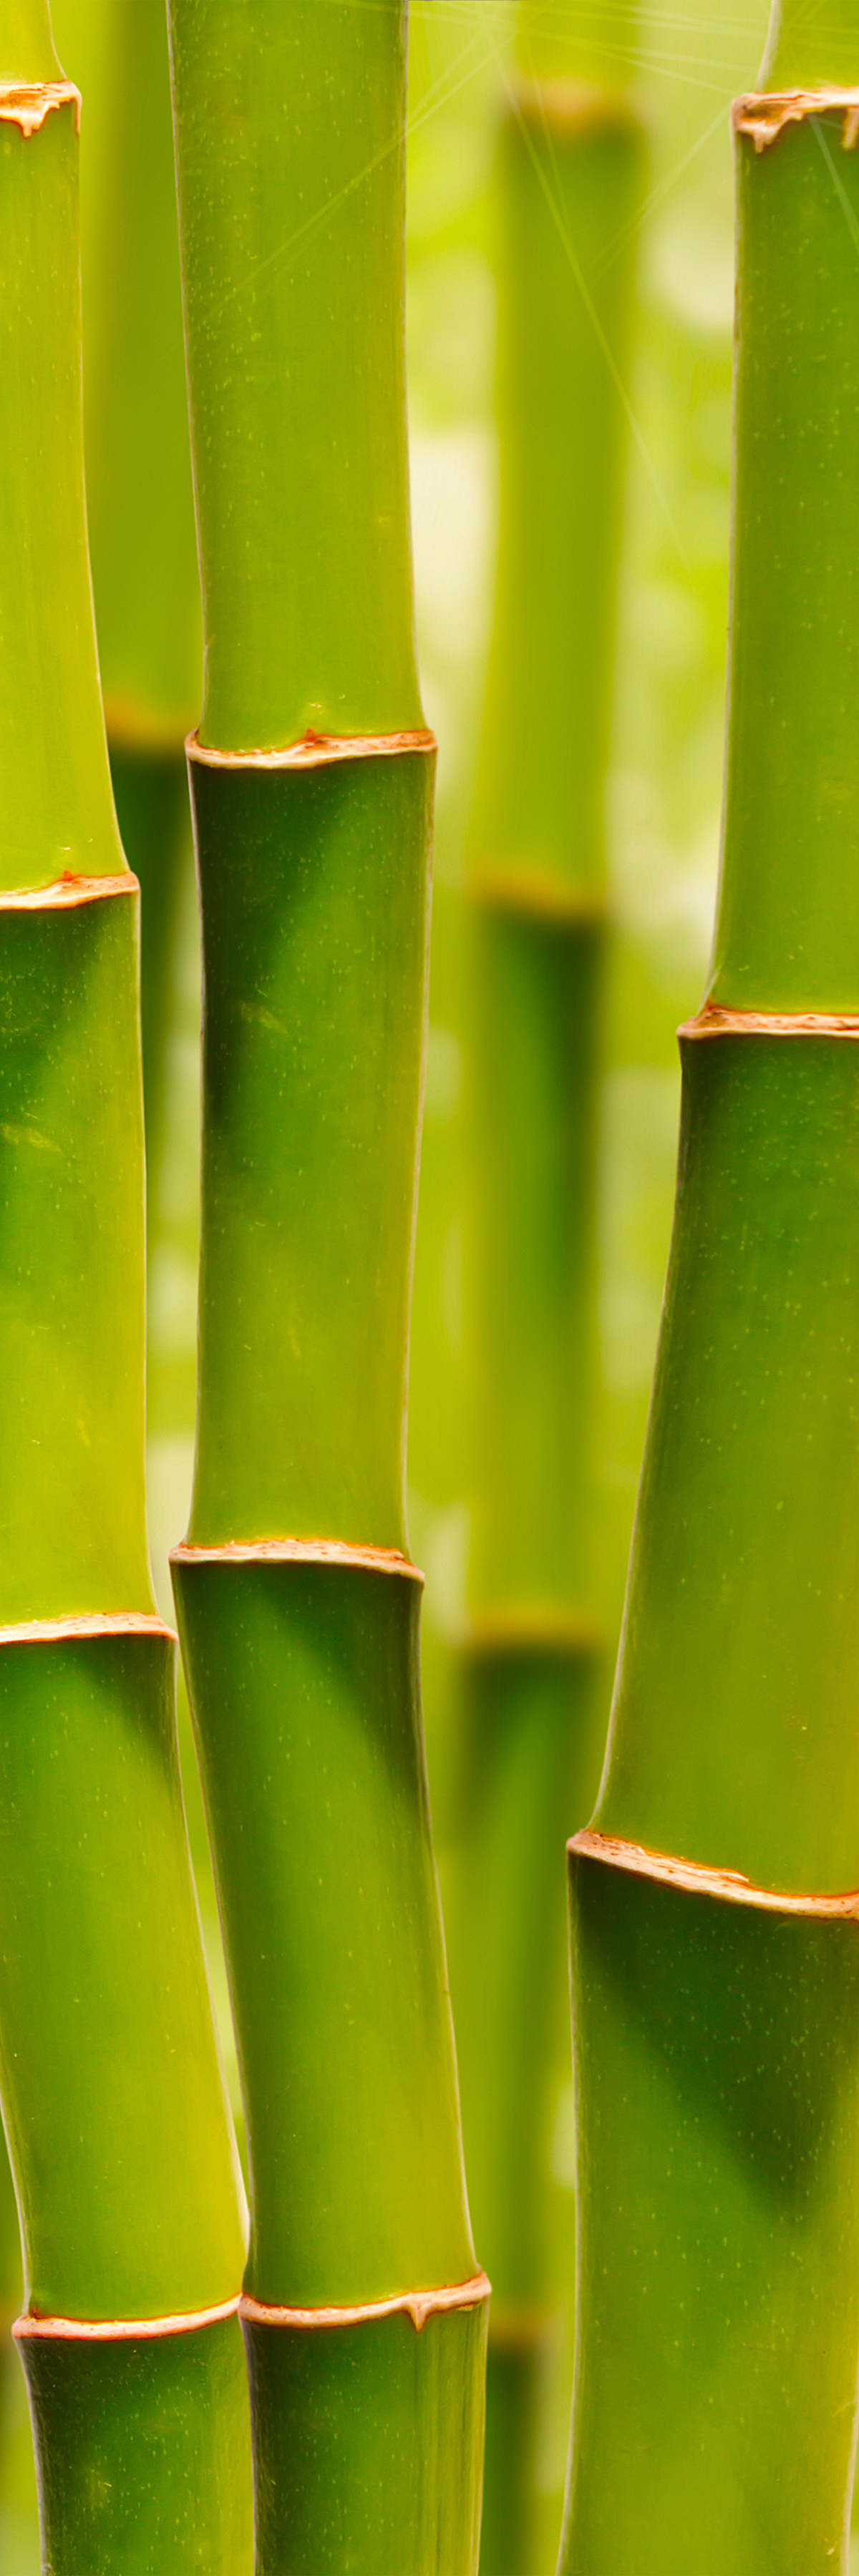 Bamboo Natural